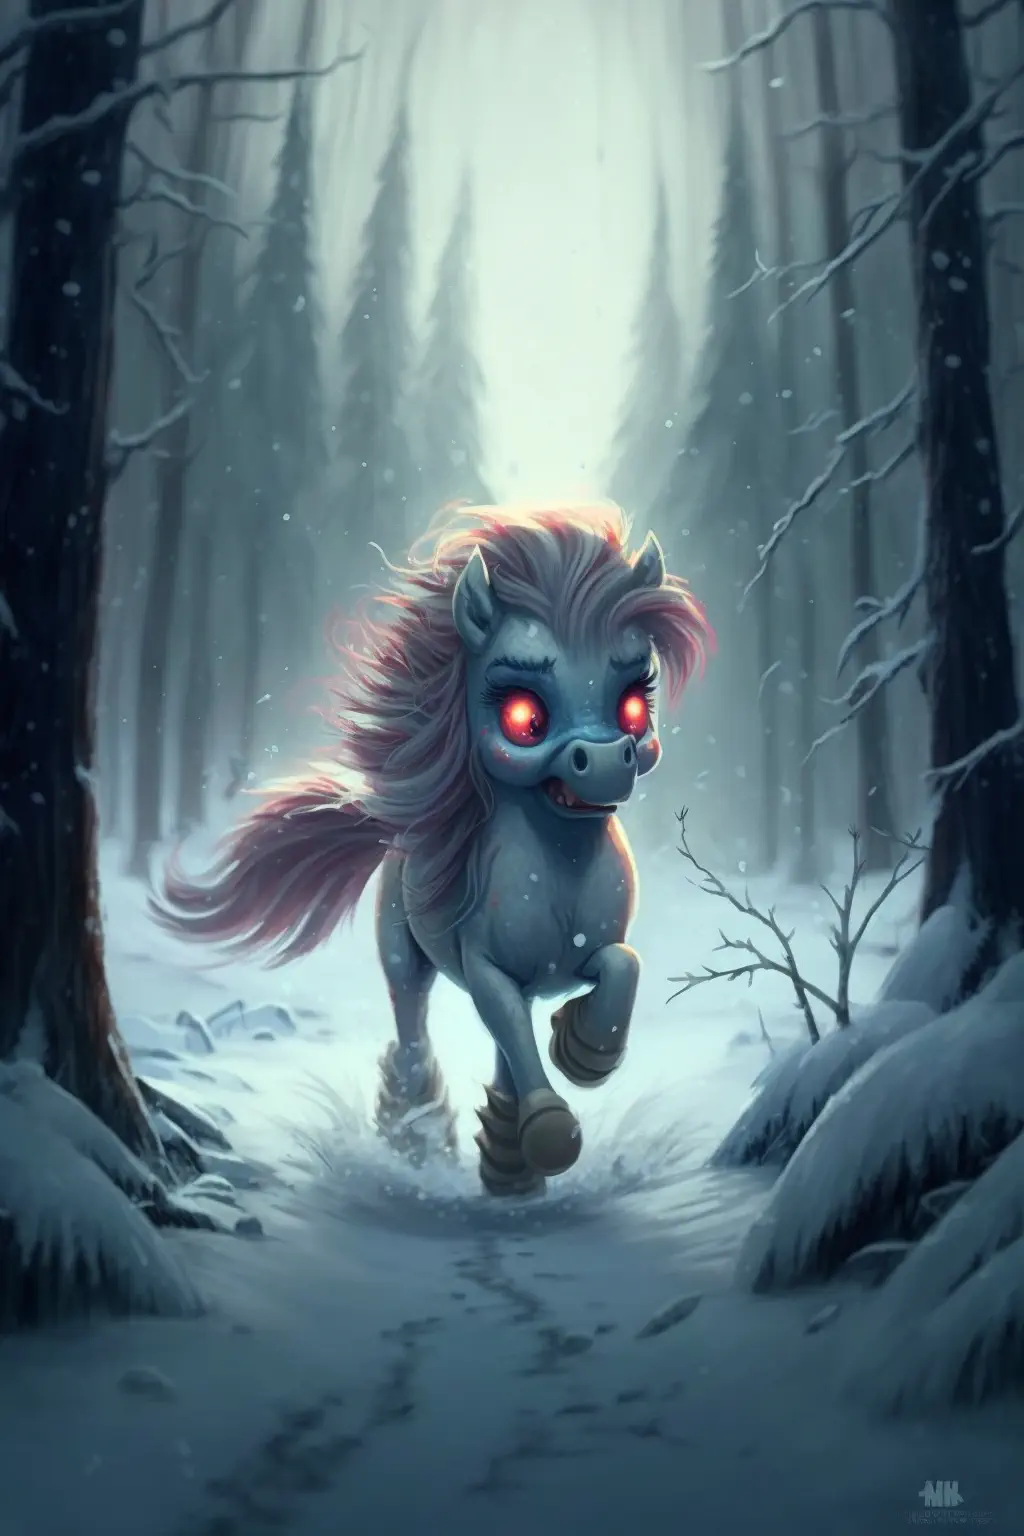 Drak00sha_my_little_pony_in_snowy_winter_forest_running_away_fr_4a6843d7-8b18-4ae9-9ab8-62dddbaf100f